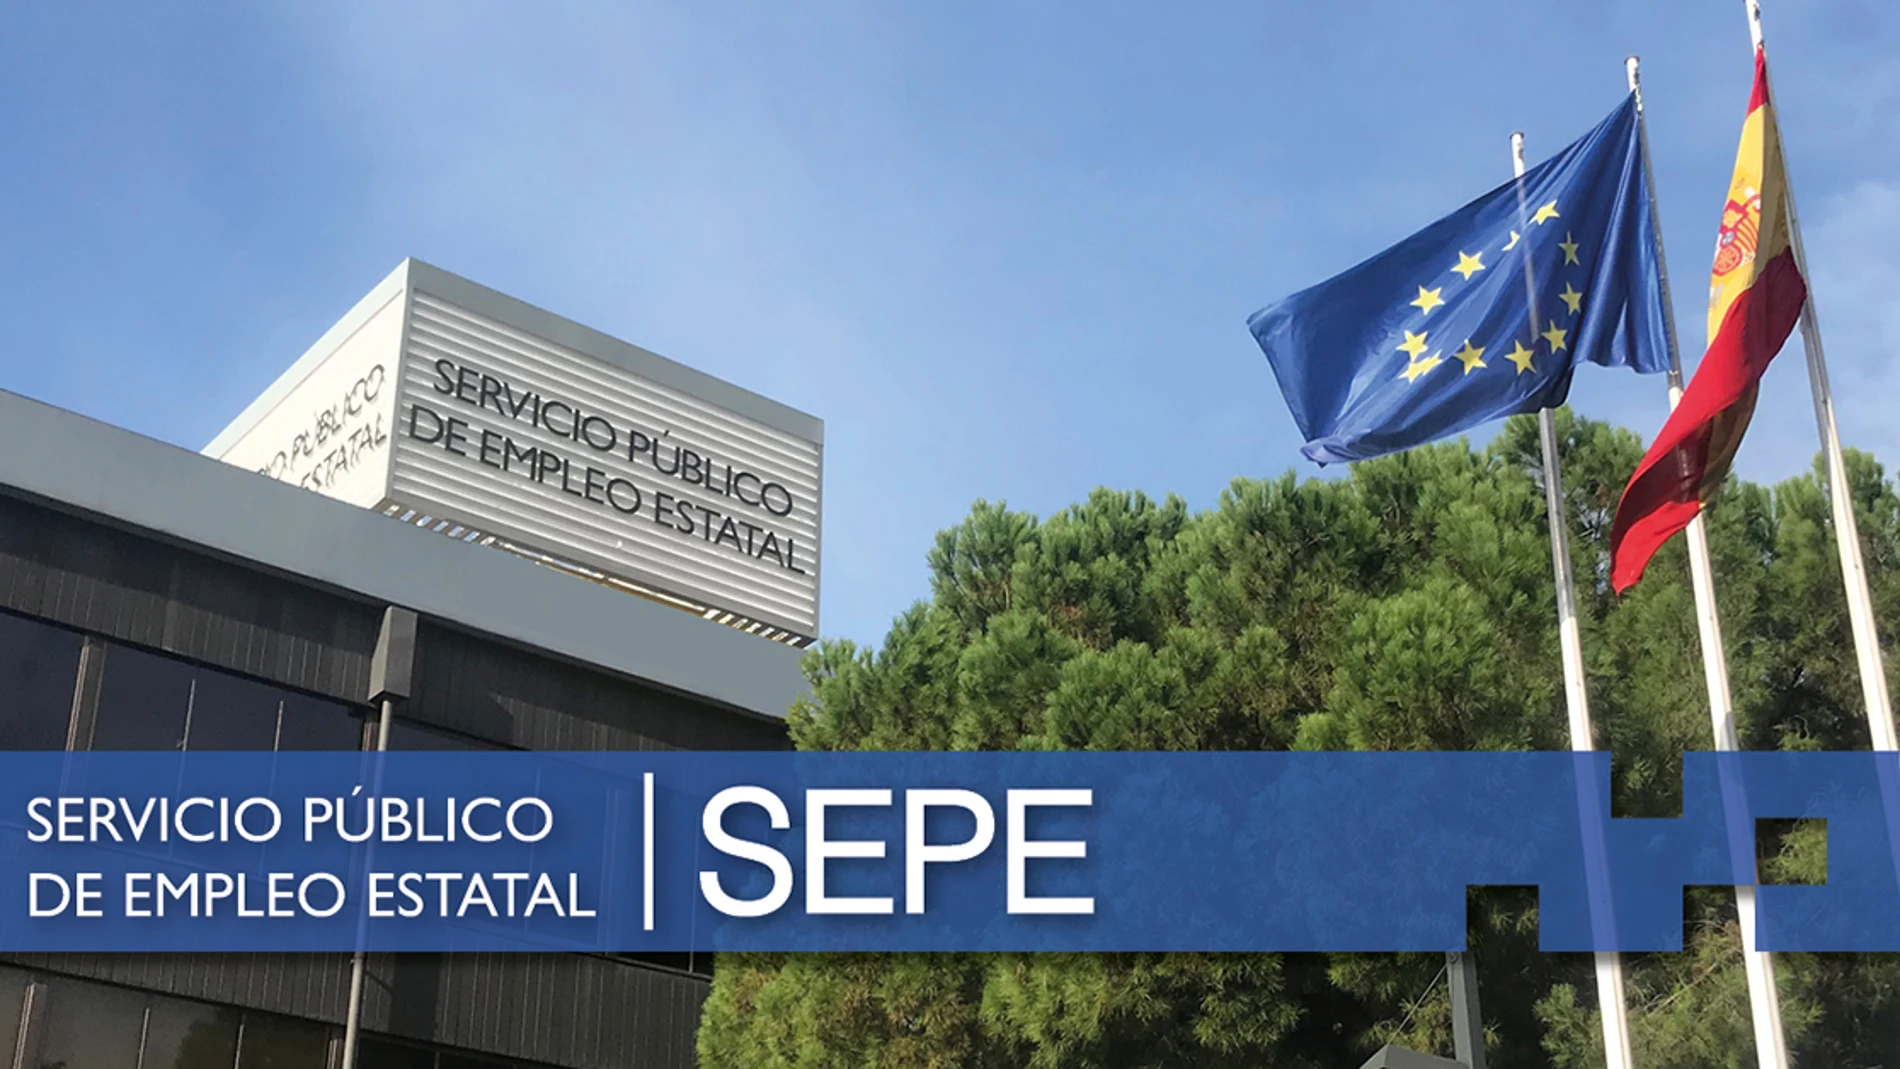 Servicio Público de Empleo Estatal (SEPE)